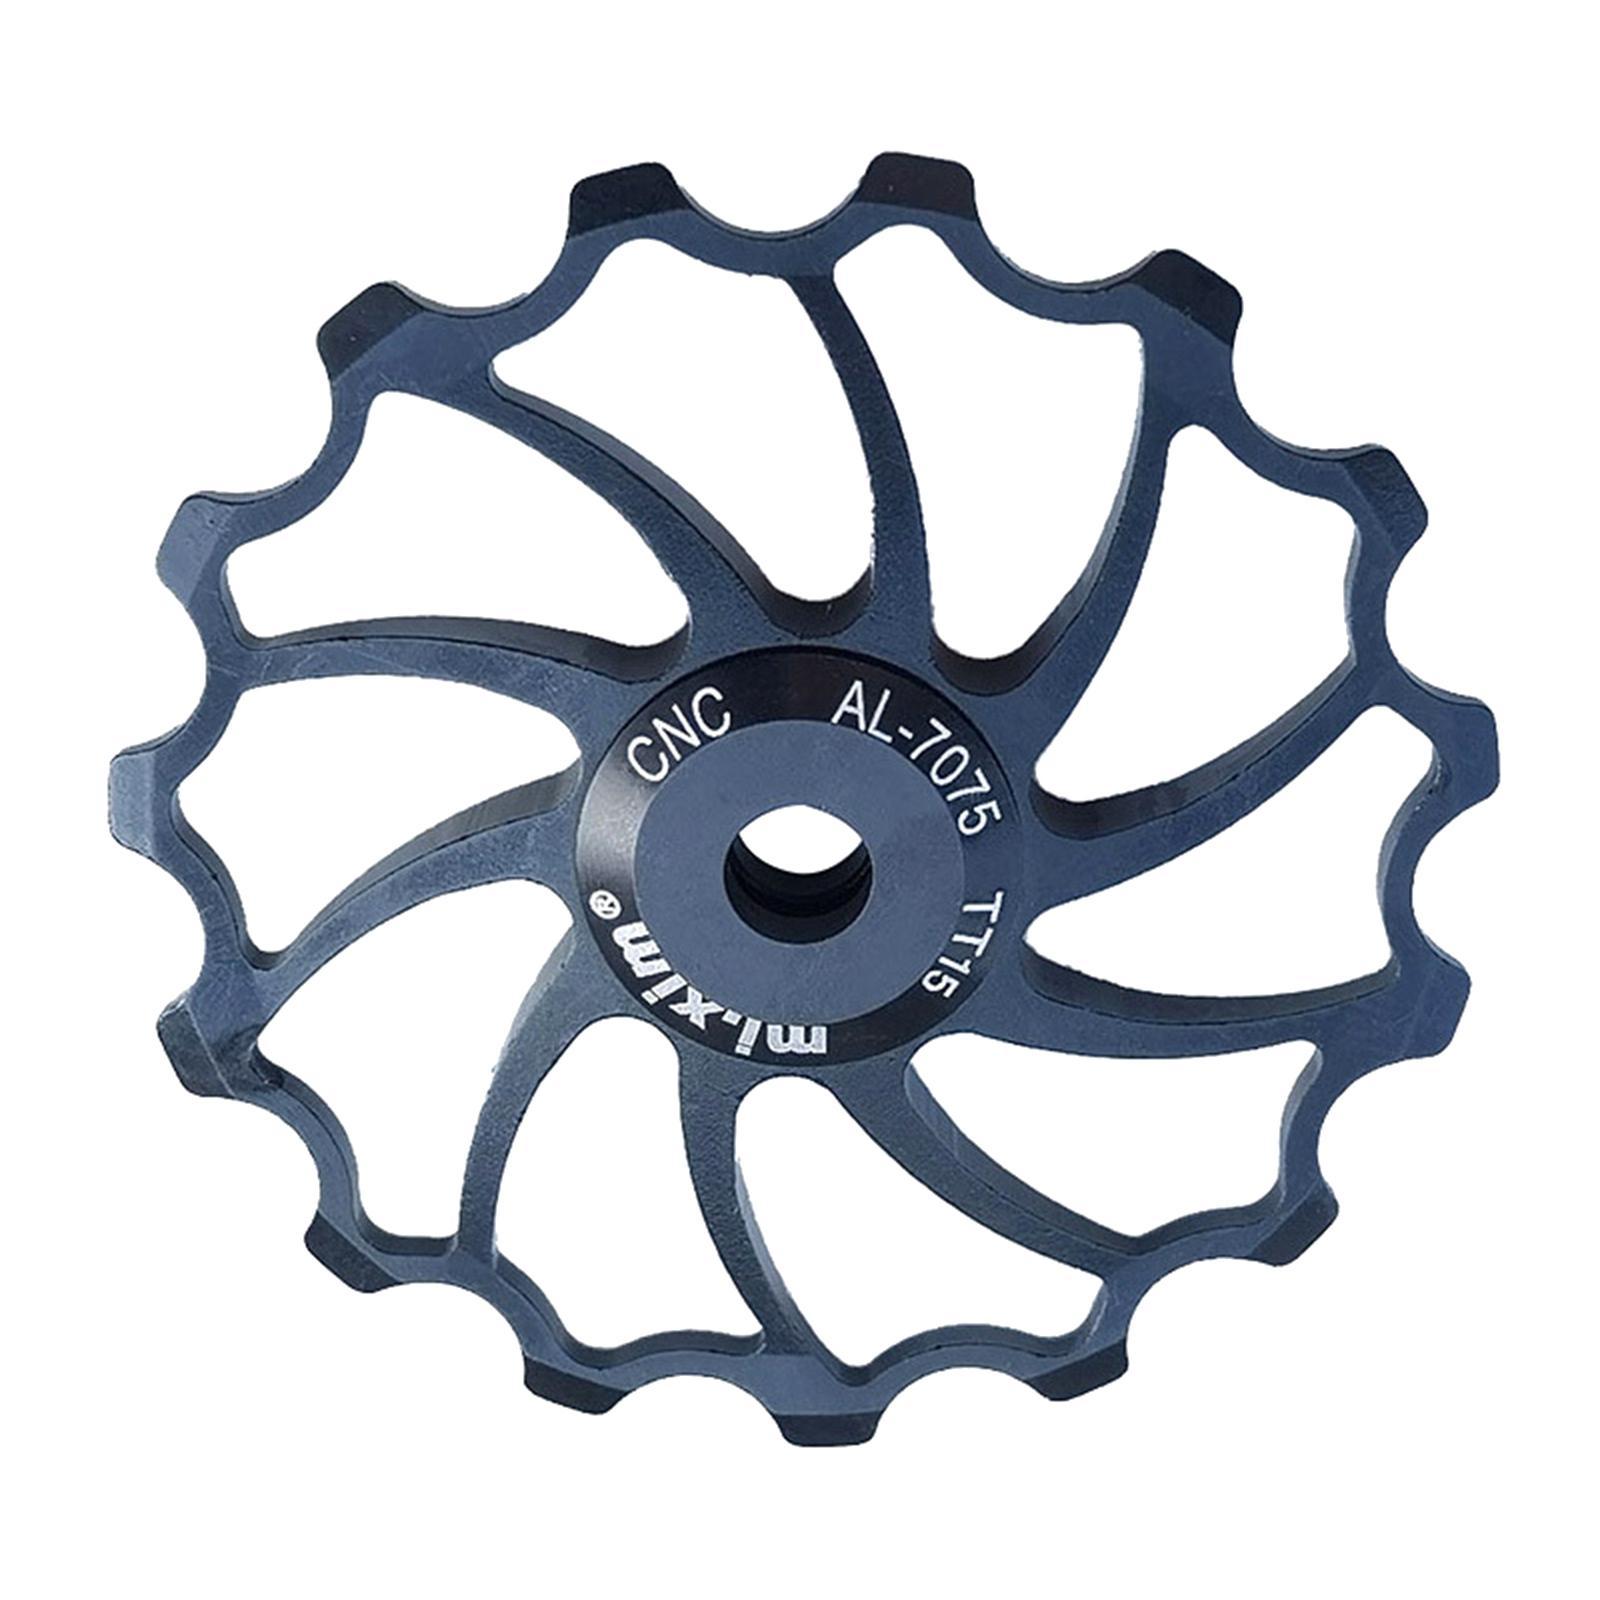 2x  Bike Rear Derailleur Pulley, Ceramic Bearing Jockey Wheel Pulley Road Bike  Rear Derailleur Guide Roller